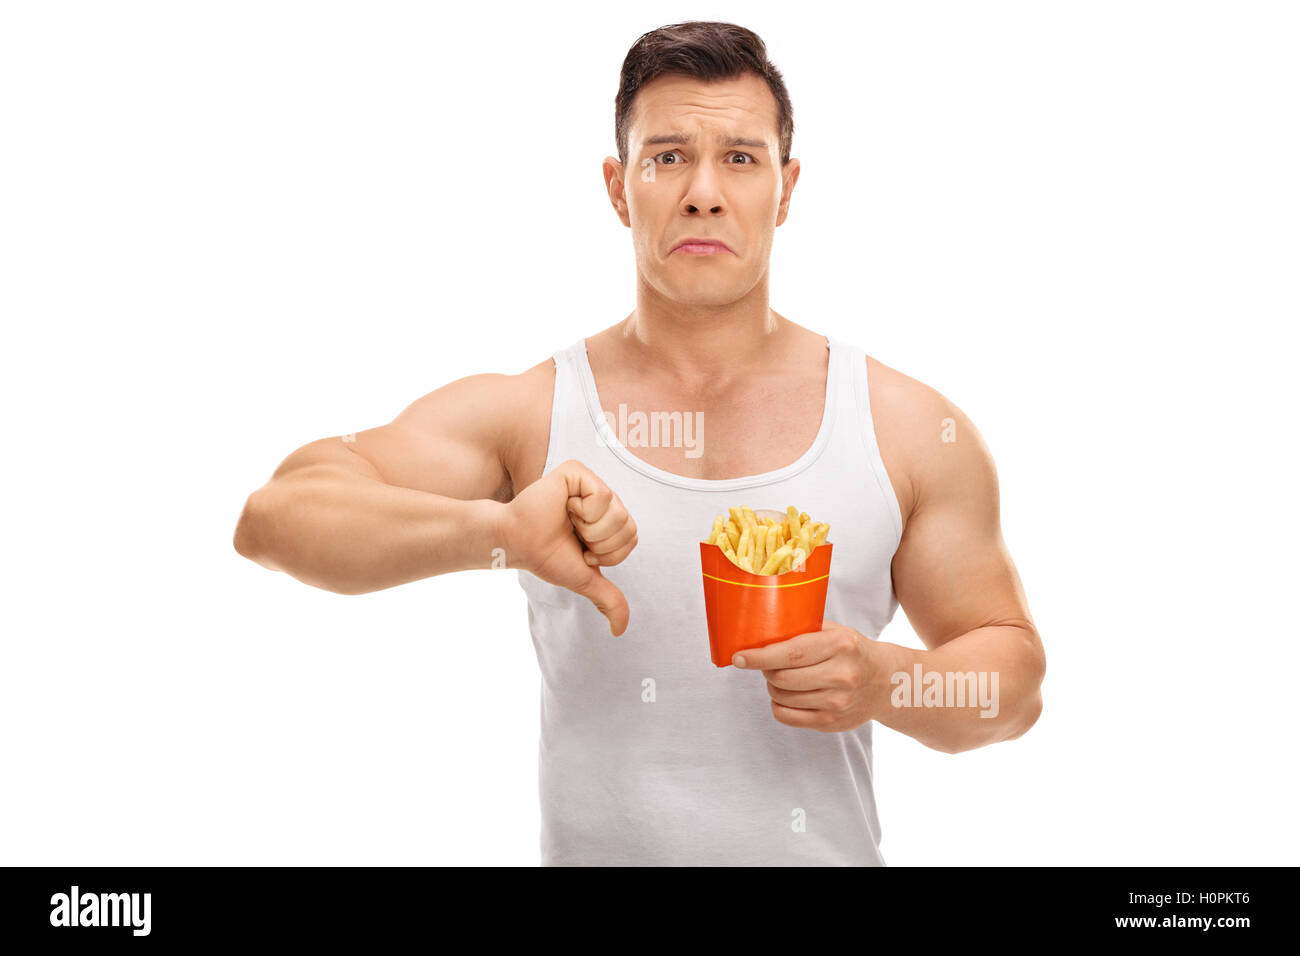 Uomo deluso tenendo un sacchetto di patatine fritte e facendo un pollice in basso segno isolato su sfondo bianco Foto Stock